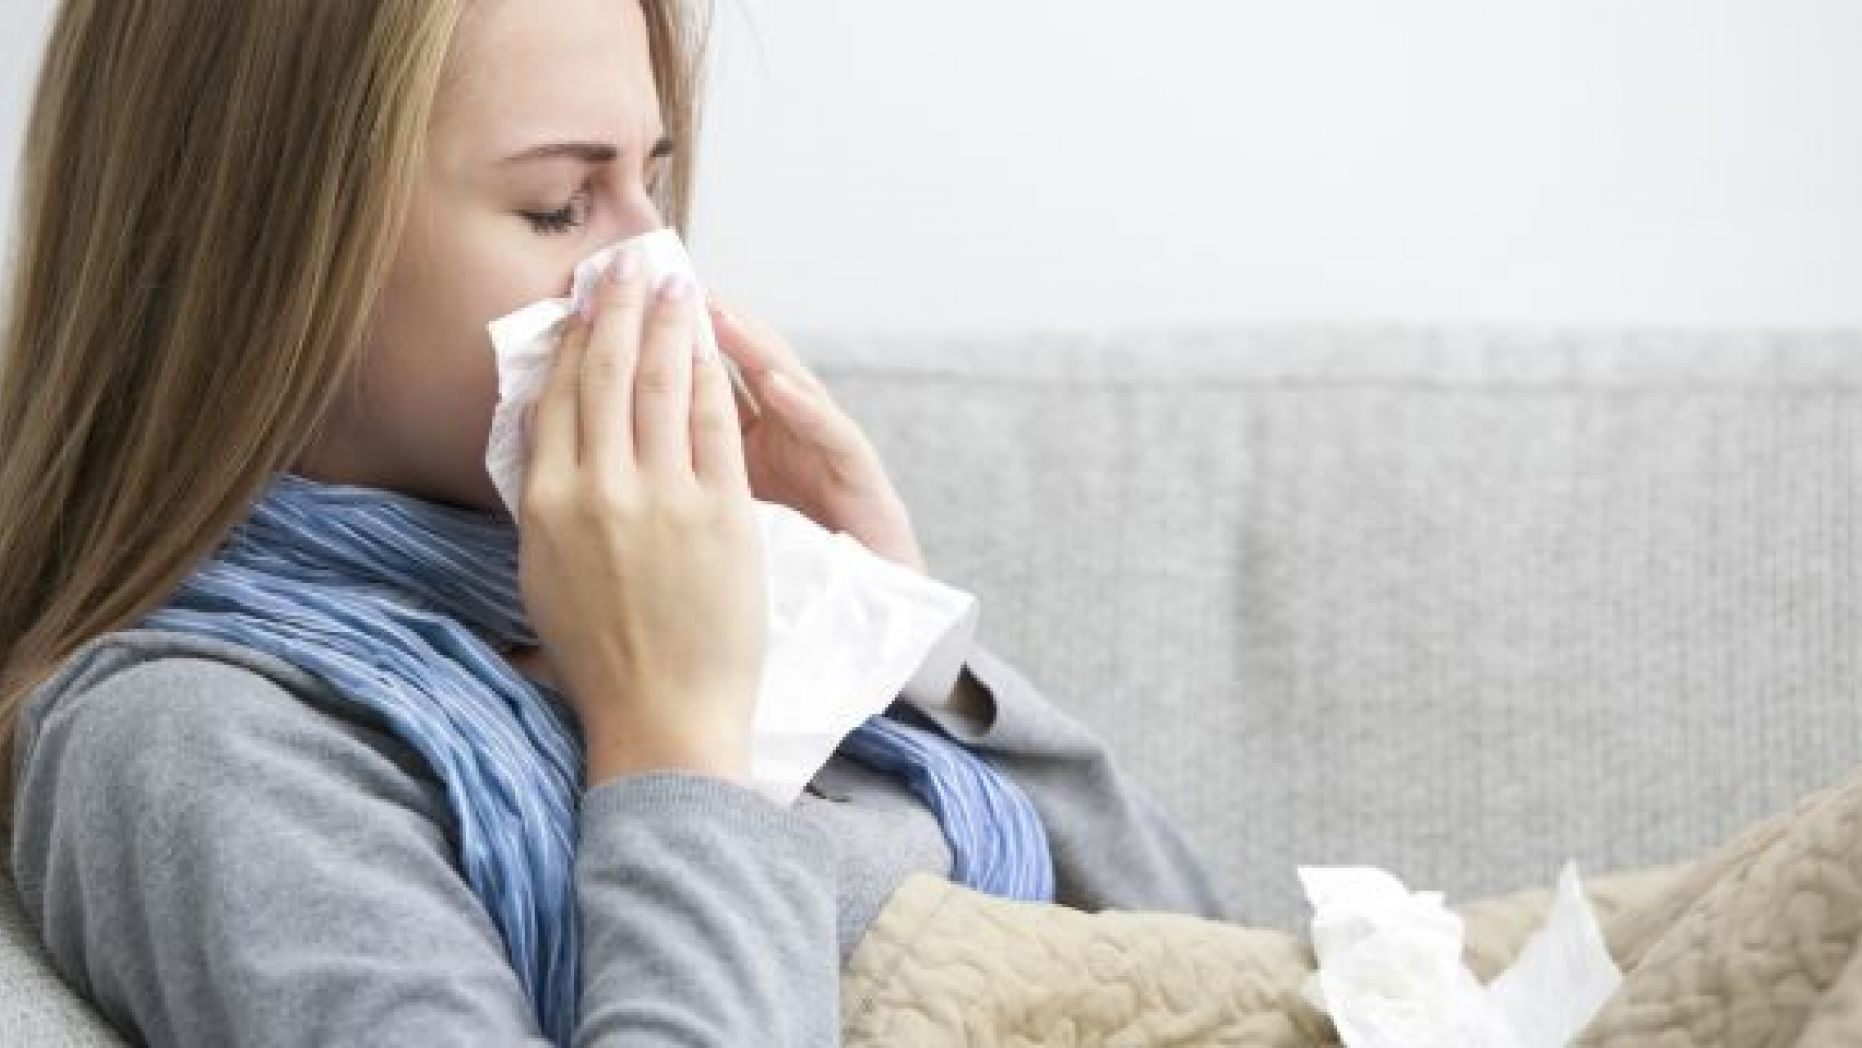 Raffreddore o influenza? I sintomi per distinguerle e riconoscerle